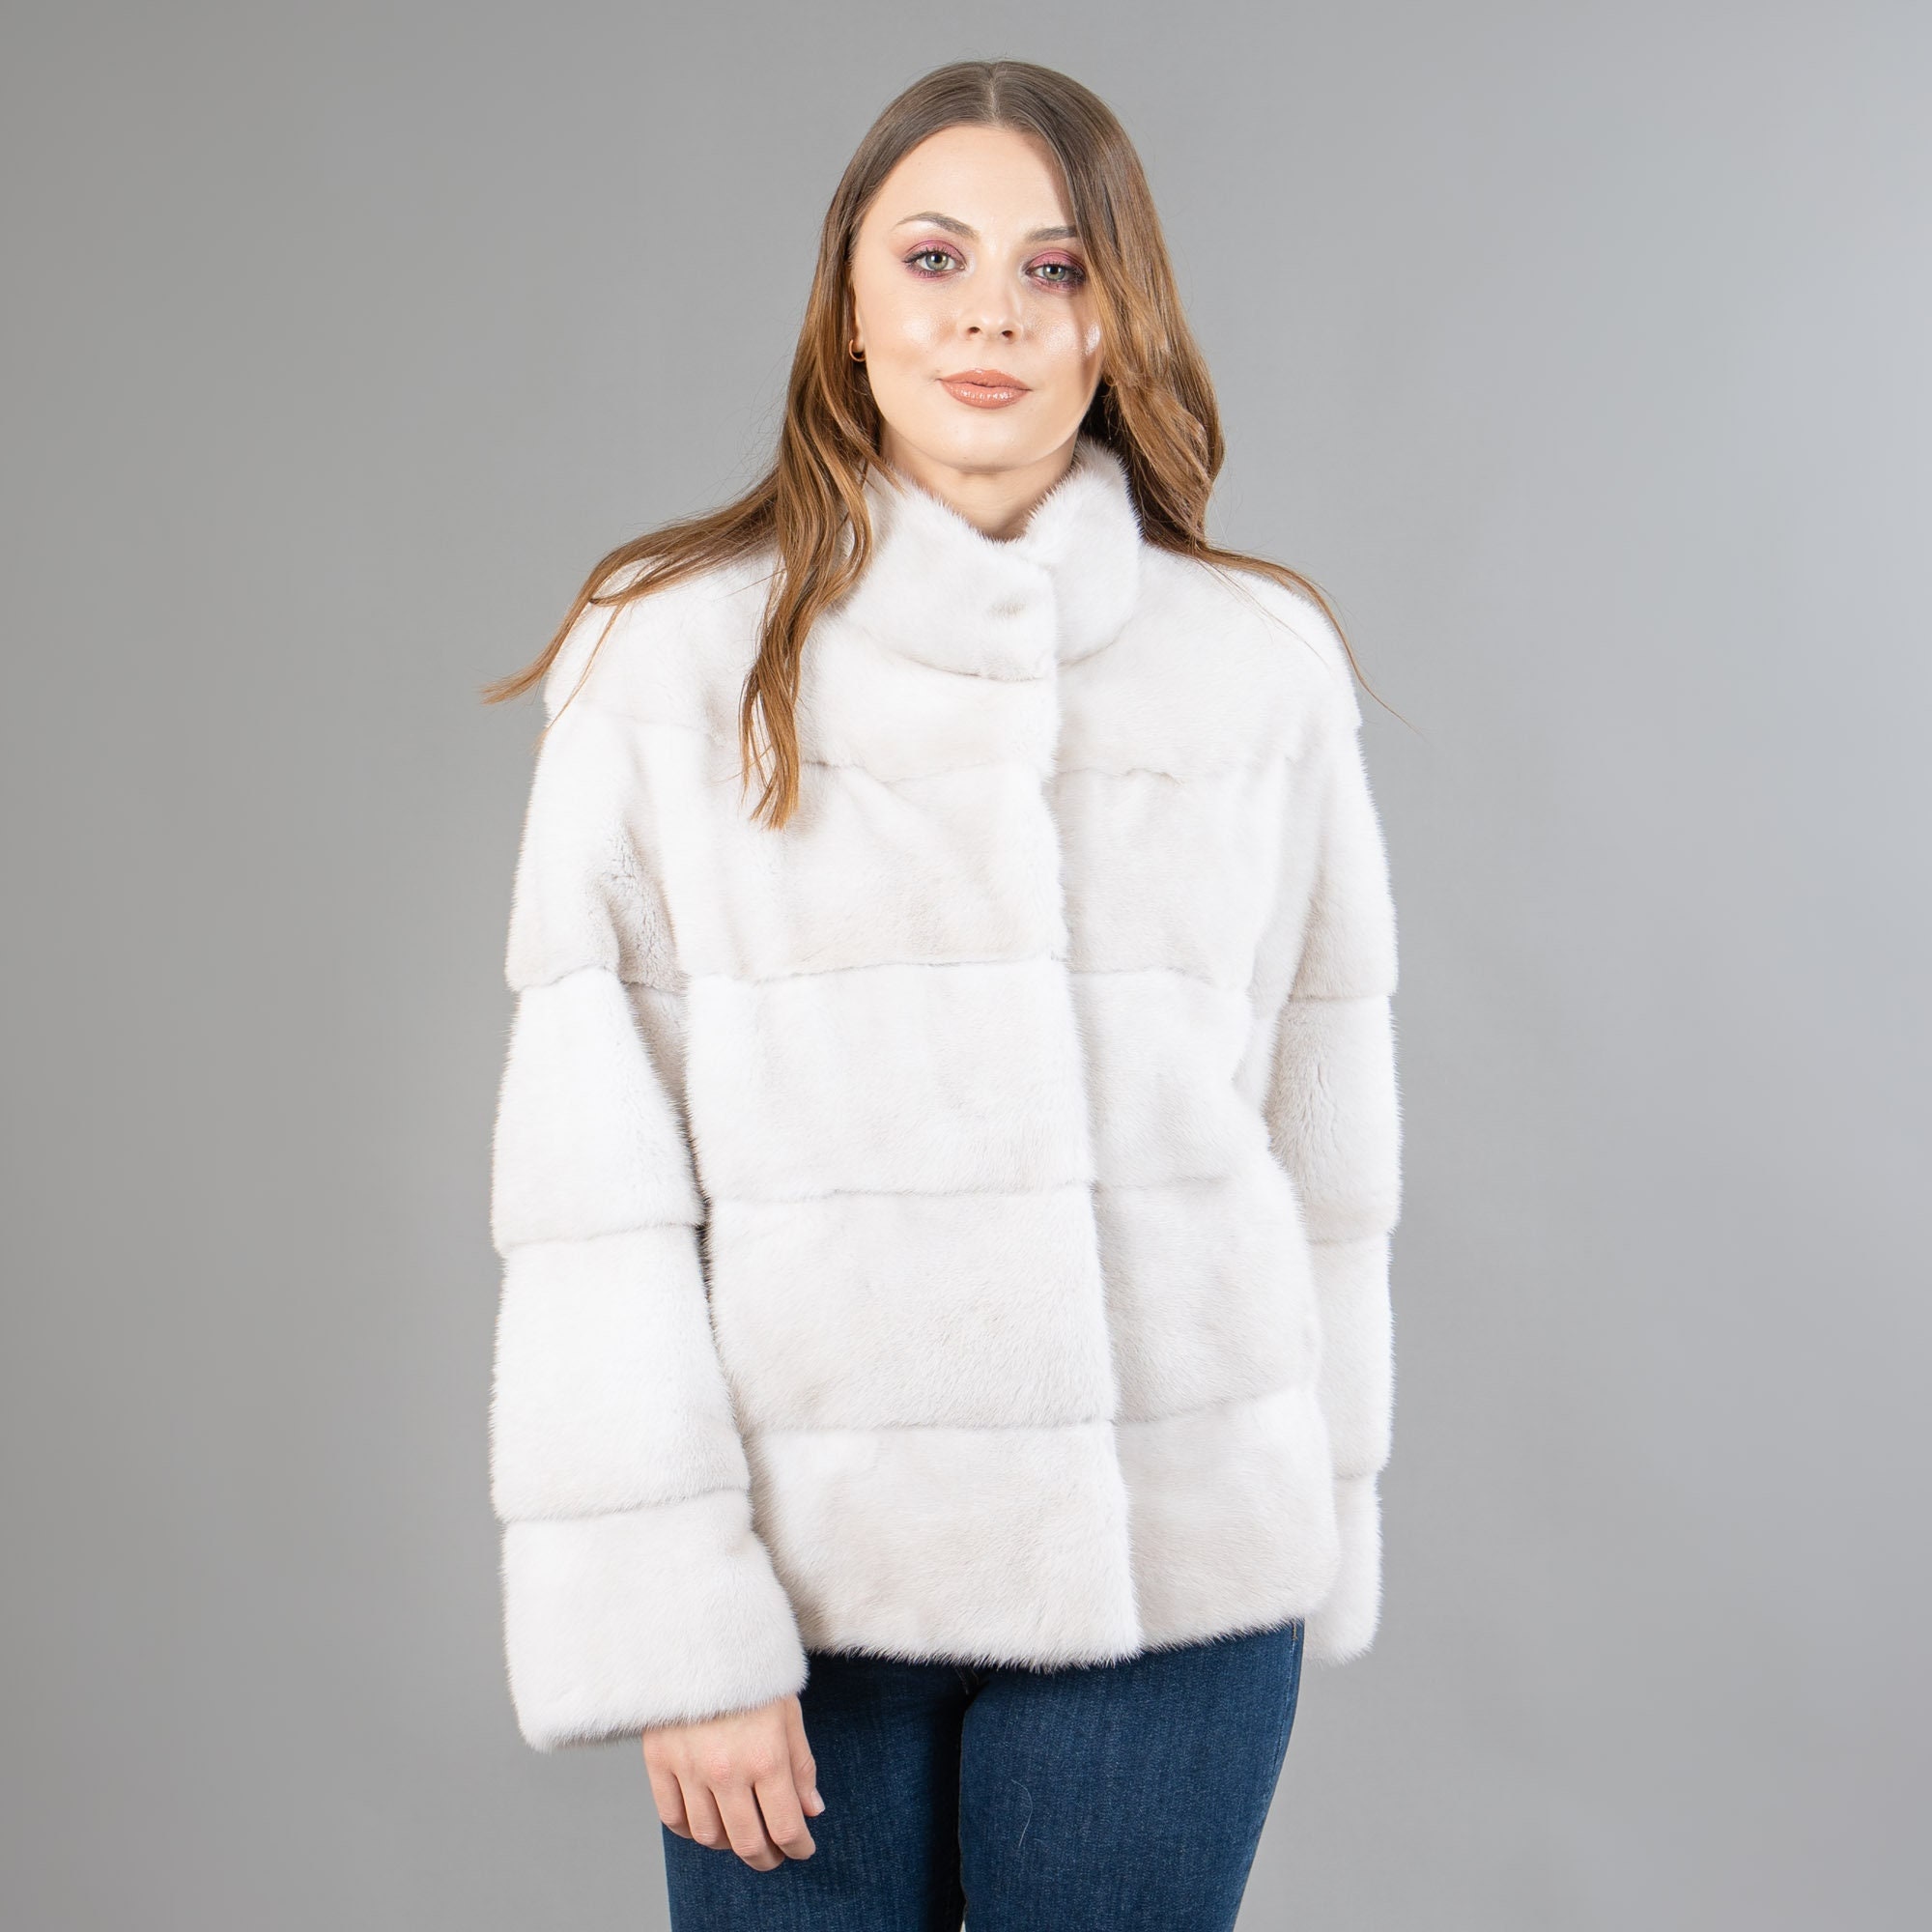 Real Mink Fur Jacket in Beige Color - Etsy Israel